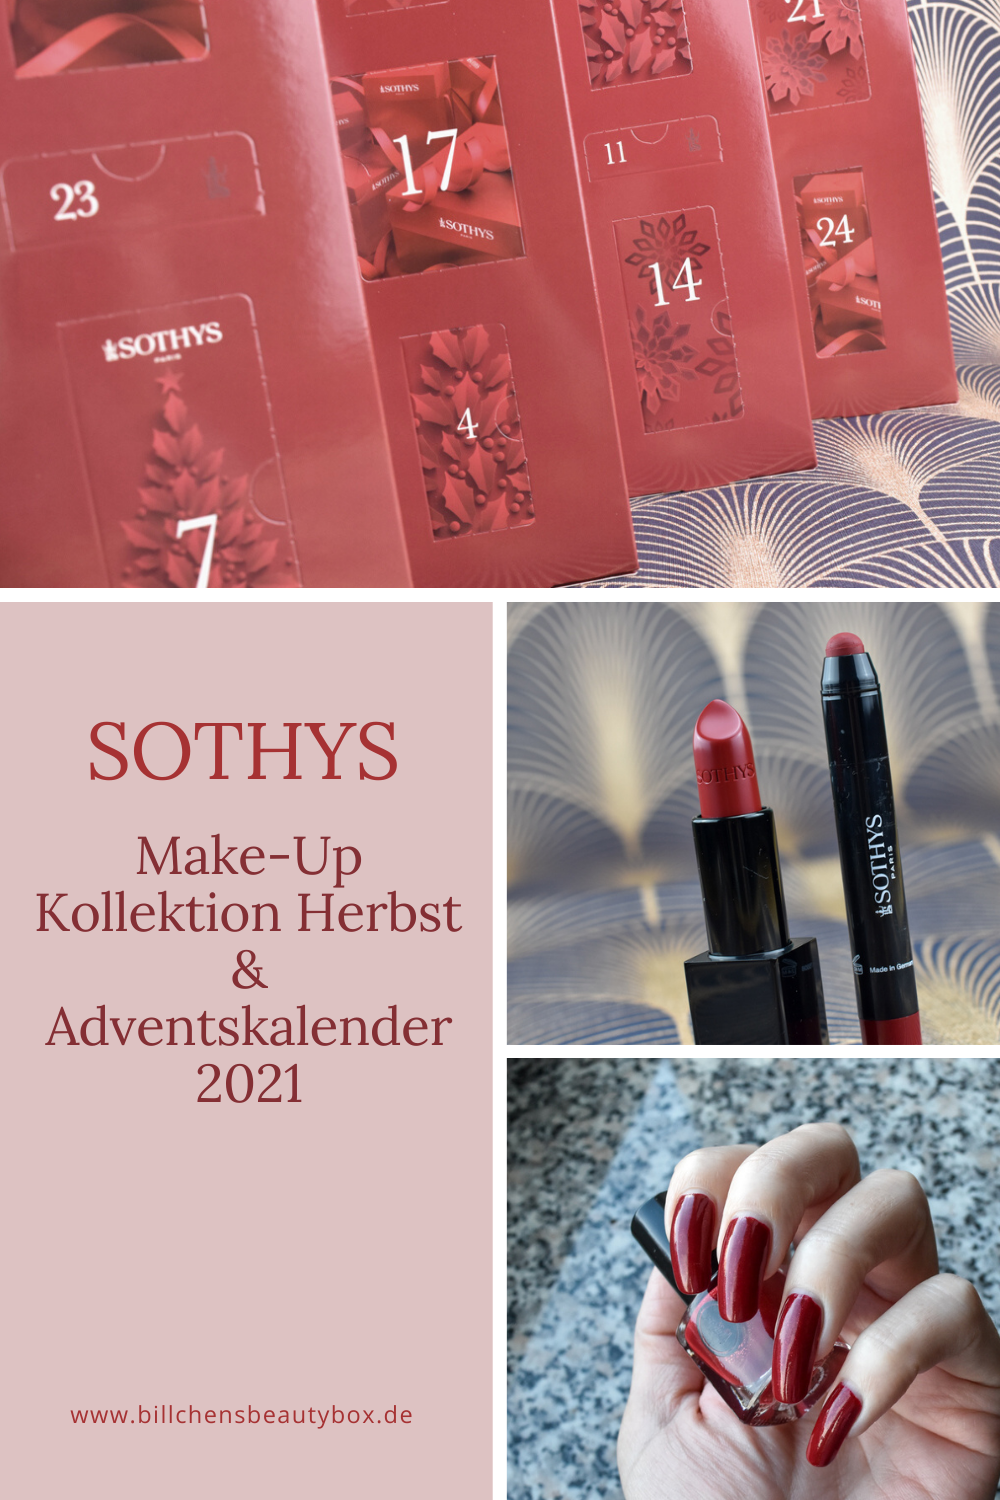 SOTHYS Make-Up Kollektion Herbst Adventskalender 2021